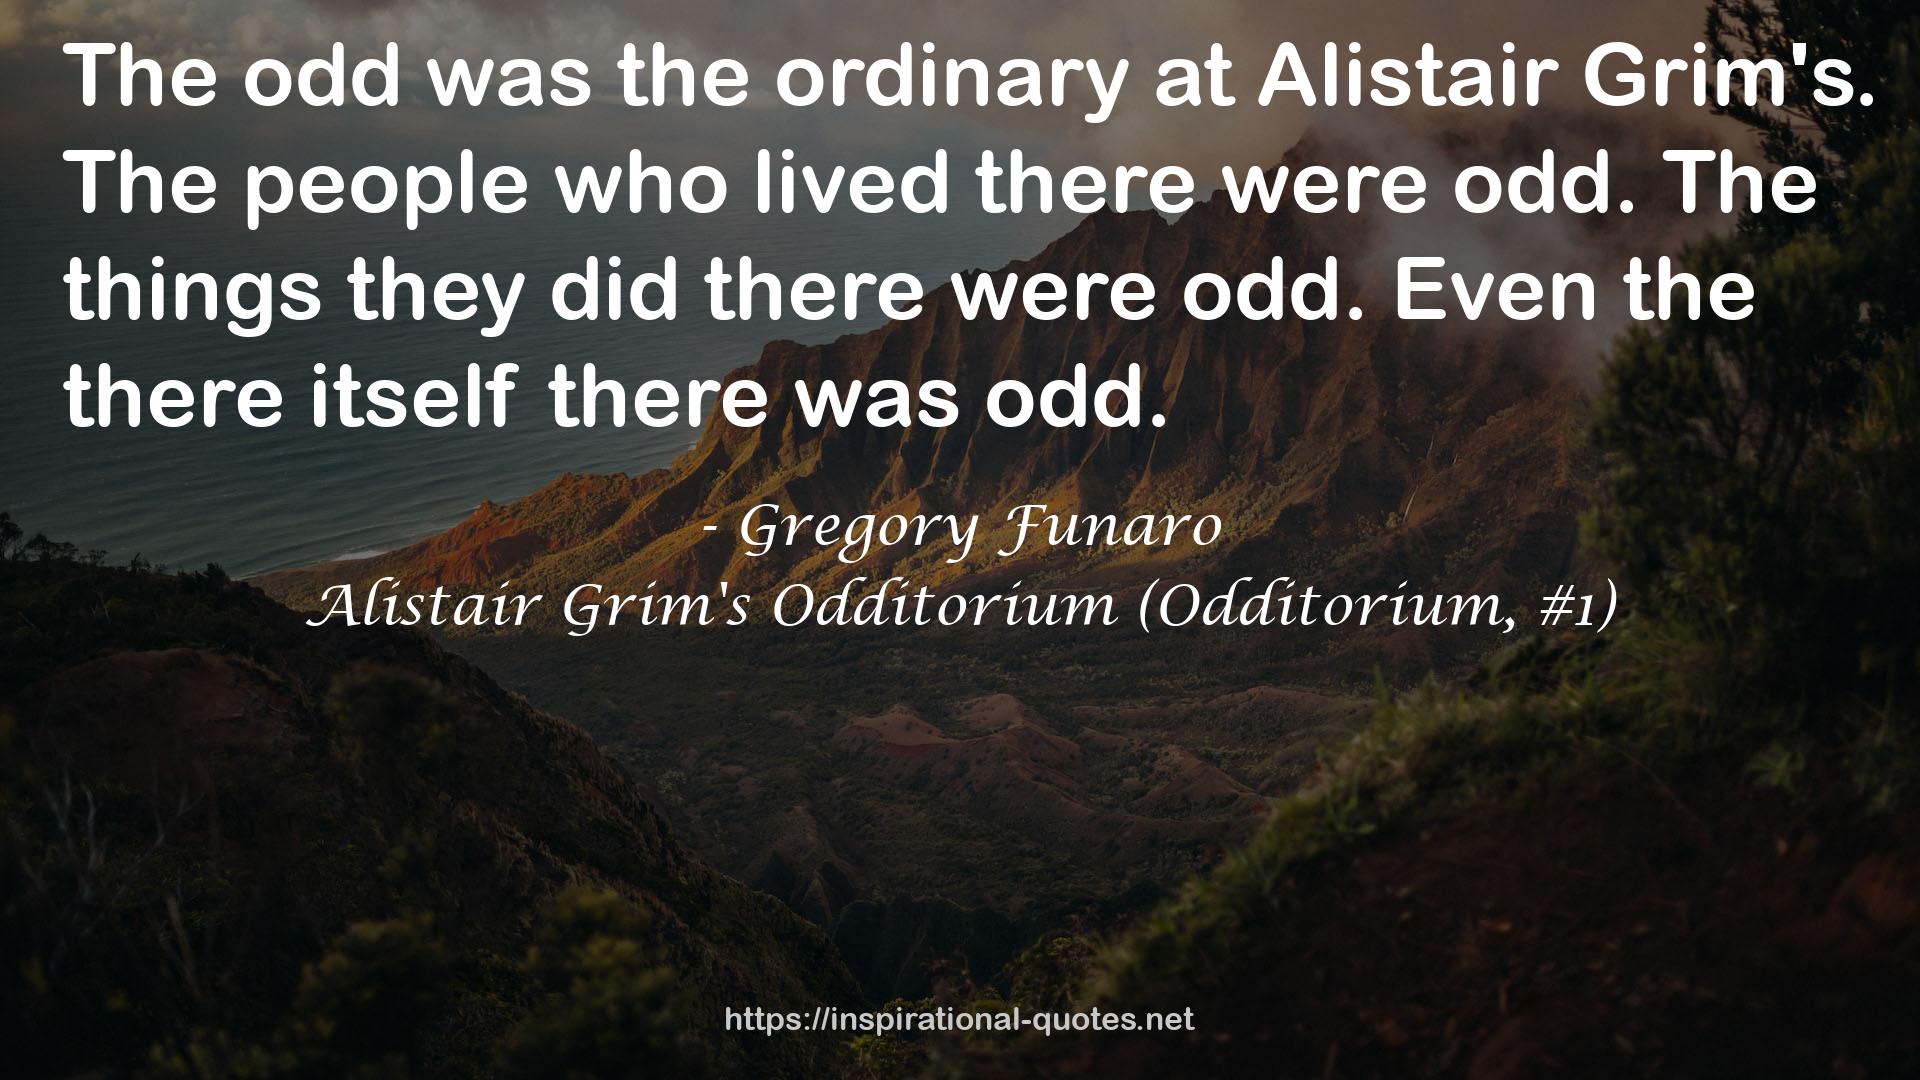 Alistair Grim's Odditorium (Odditorium, #1) QUOTES